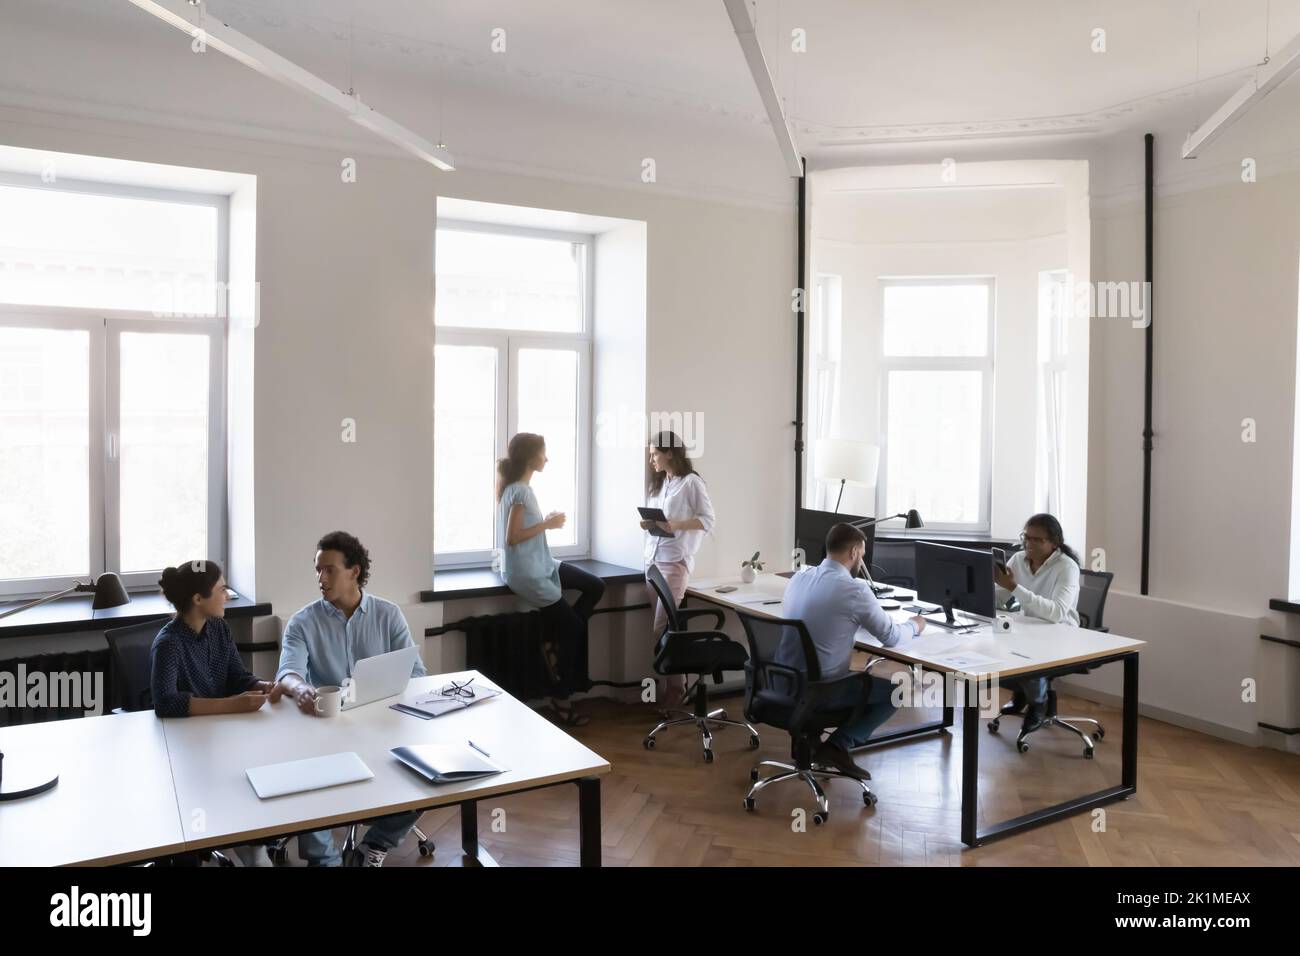 Moderne Loft-Büroräume mit multiethnischem Business-Team Stockfoto